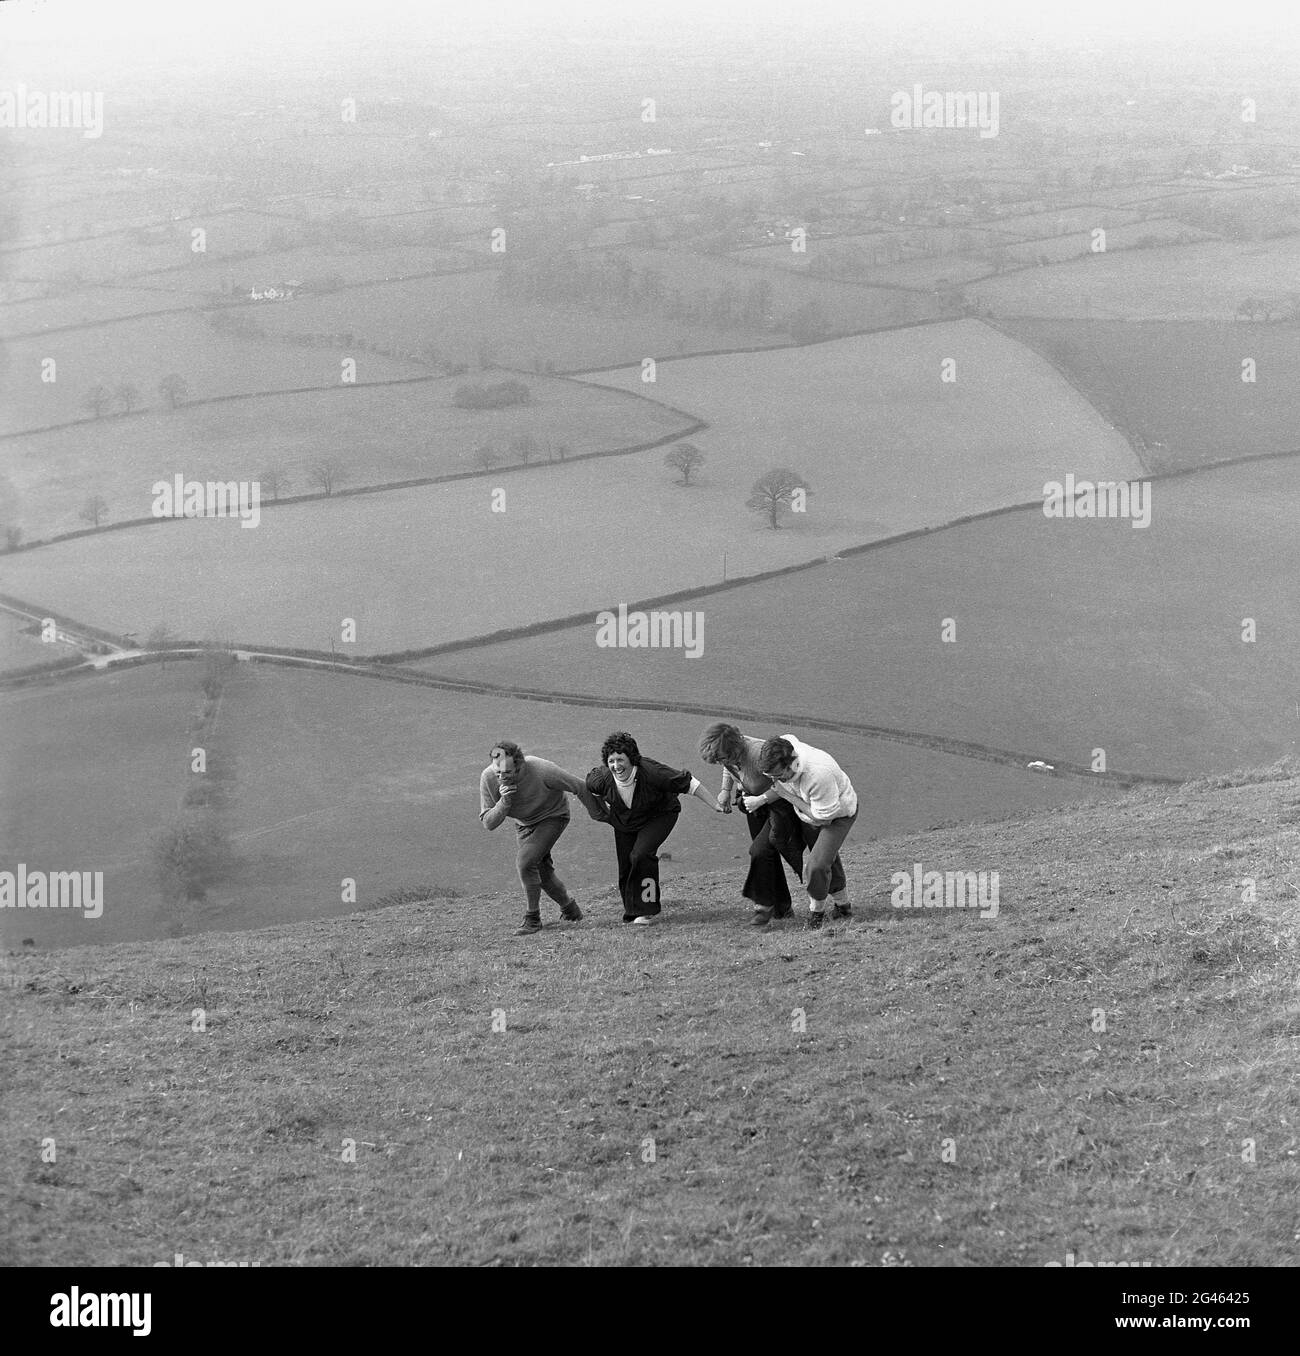 1976, historisch, Spaß auf einem Hügel, zwei Paare, die spazieren gehen, sich gegenseitig festhalten, wenn sie versuchen, einen bergauf- oder bergauf zu kommen, Shropshire, England, Großbritannien. Die Shropshire Hills sind eine der natürlichen Regionen Englands und ein Gebiet von herausragender natürlicher Schönheit (AONB). Stockfoto